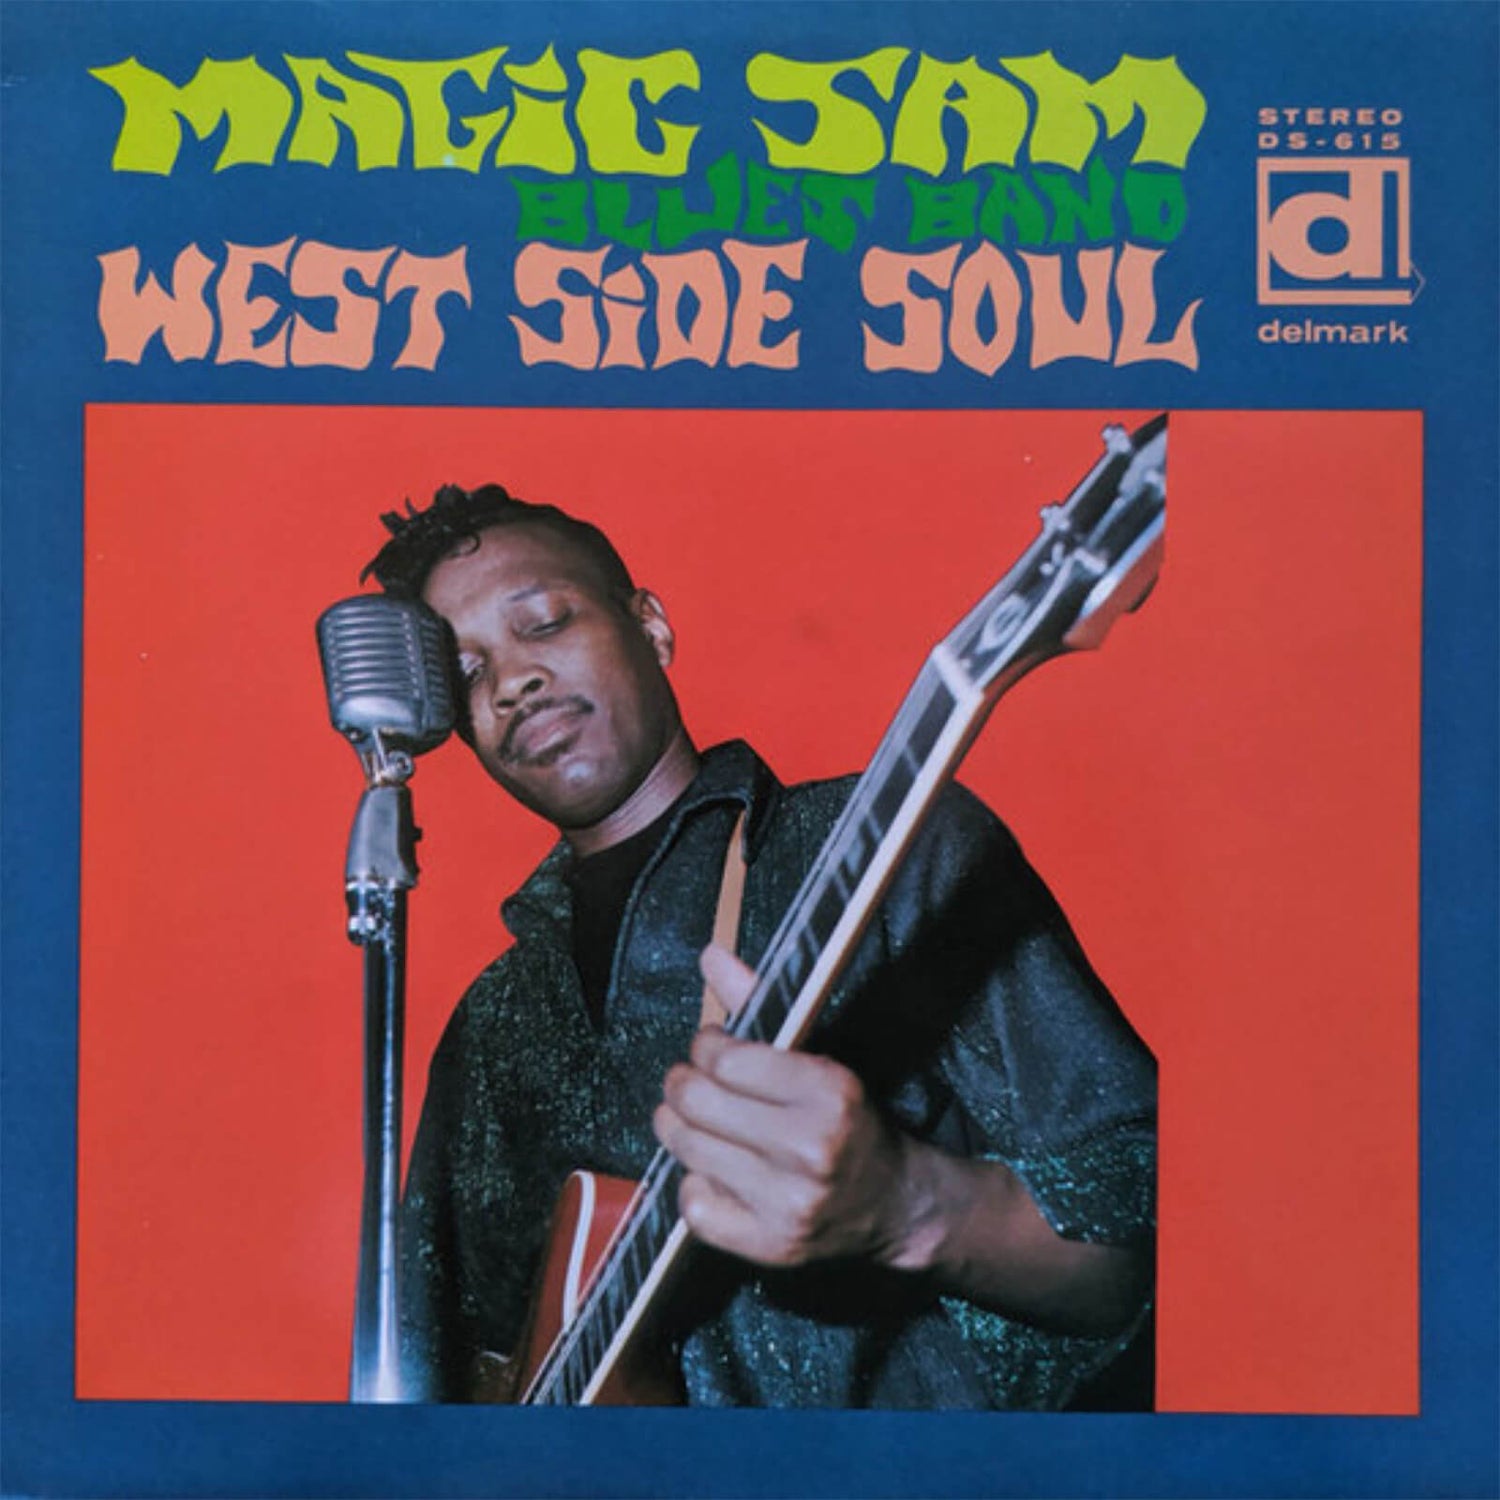 Magic Sam's Blues Band - West Side Soul Vinyl